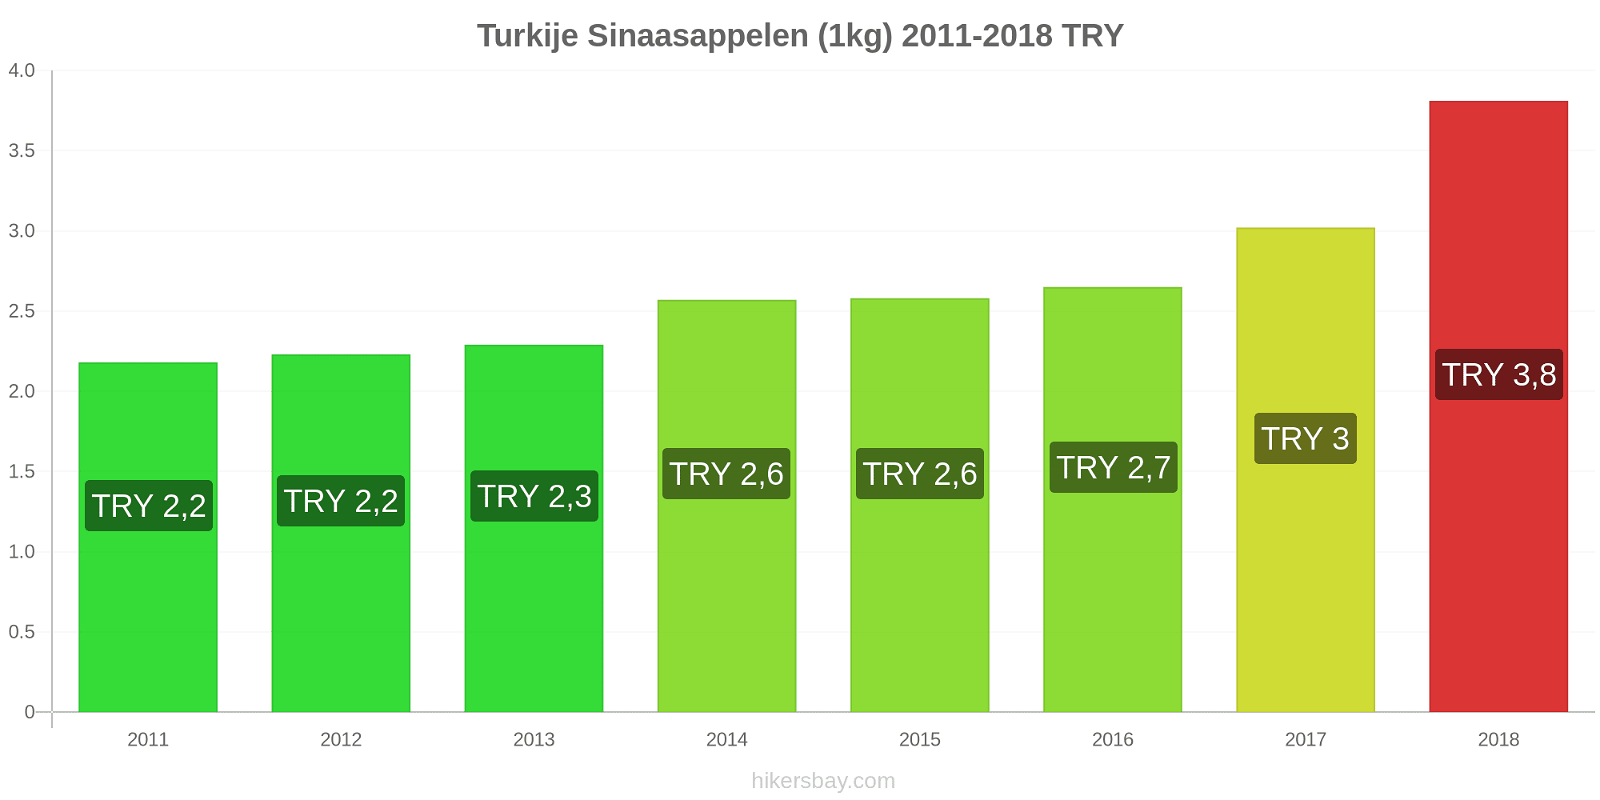 Turkije prijswijzigingen Sinaasappels (1kg) hikersbay.com